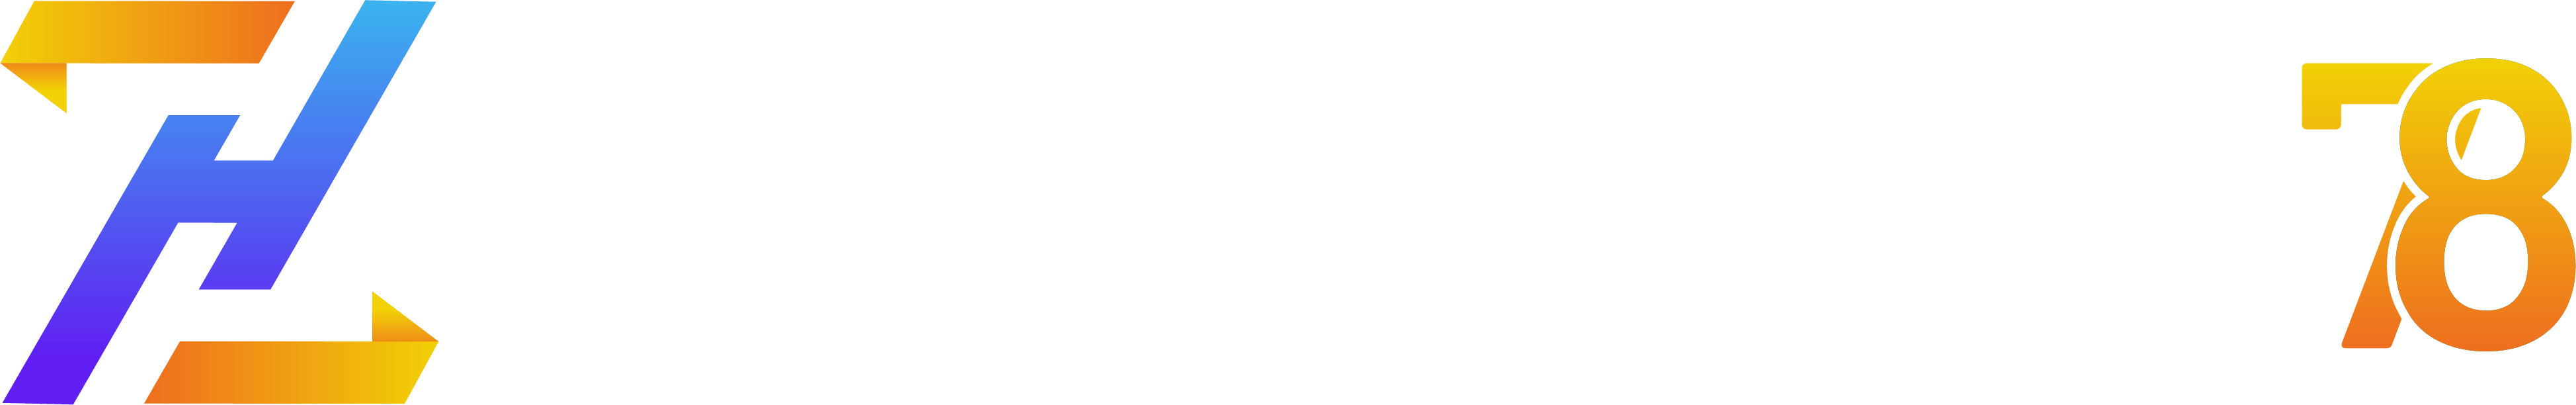 TOKOHOKI78 Situs online Terpercaya dan Terbesar di Asia 